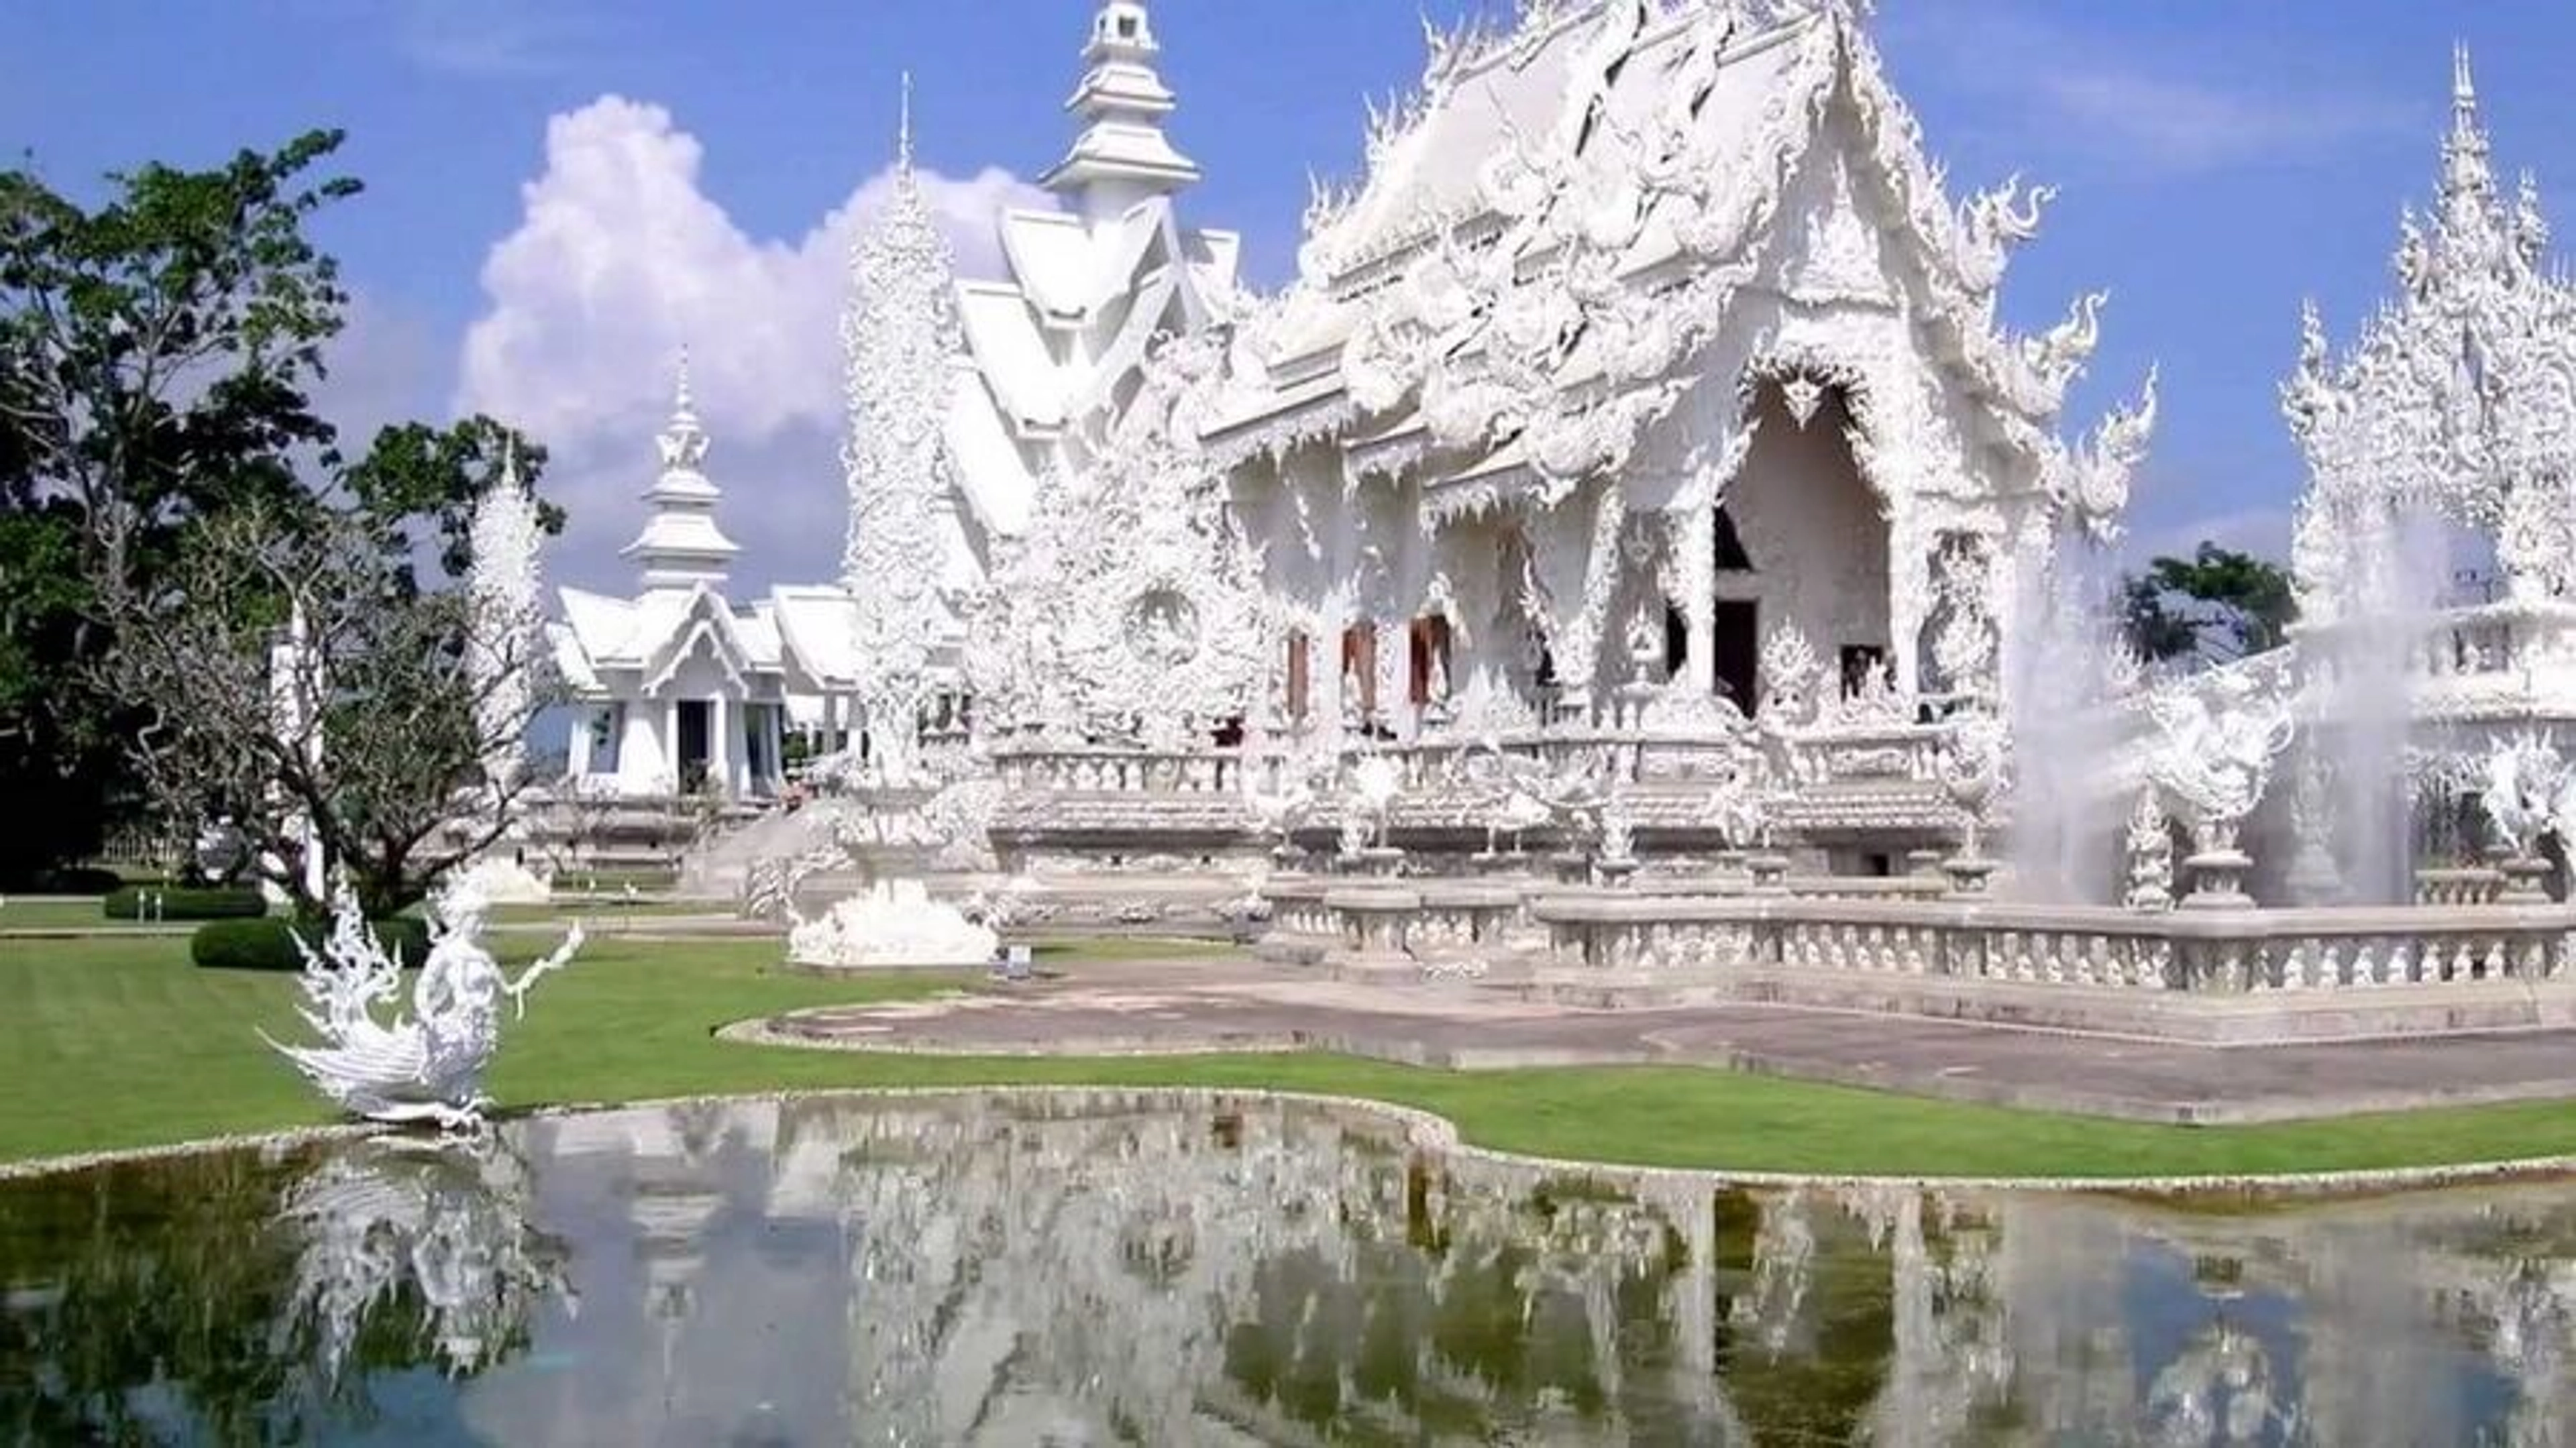 Wat Tham Phra là một trong những điểm đến du lịch nổi tiếng ở Chiang Rai